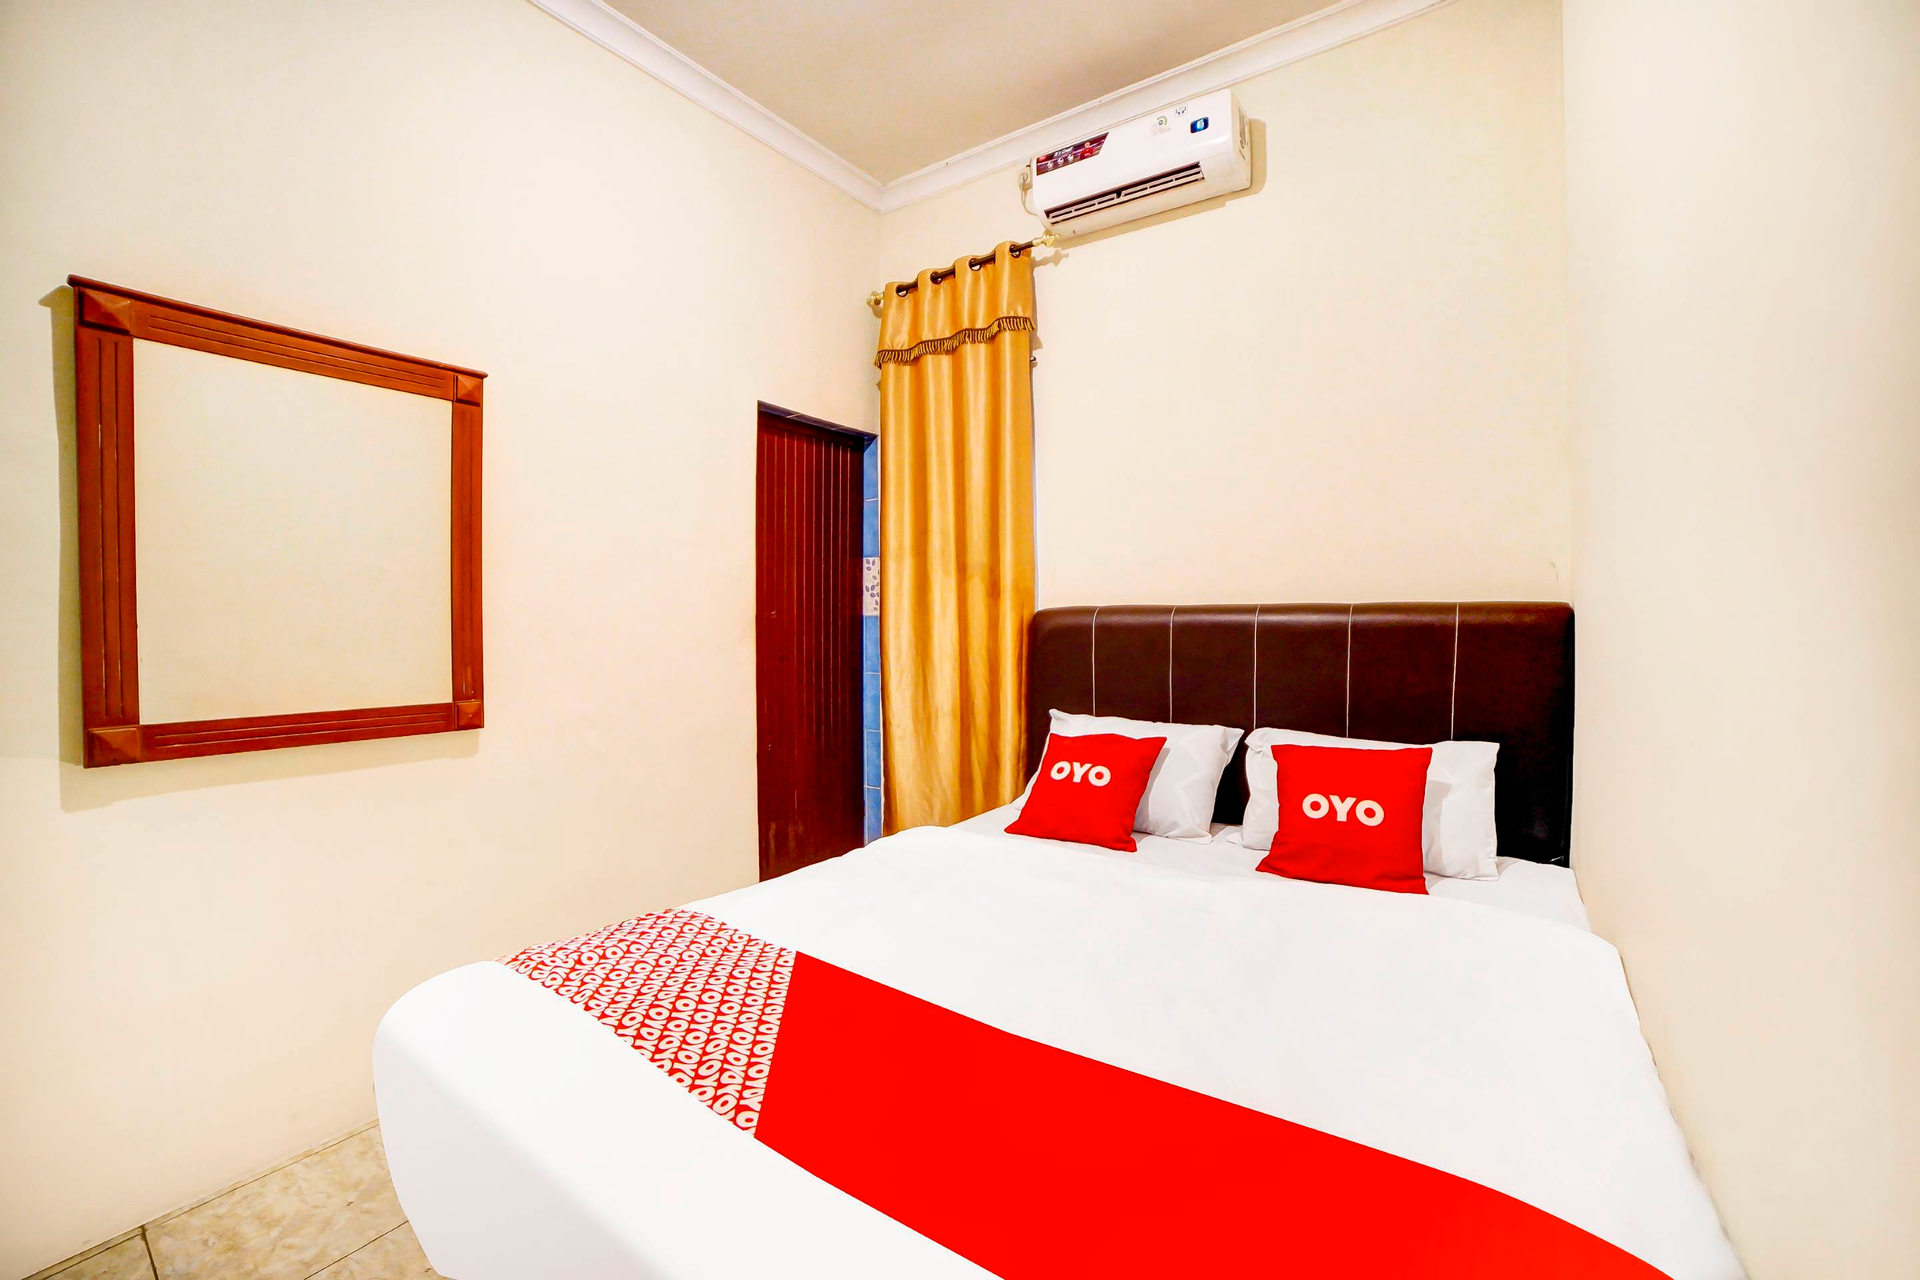 Bedroom 1, OYO 91199 Felicia Homestay, Medan